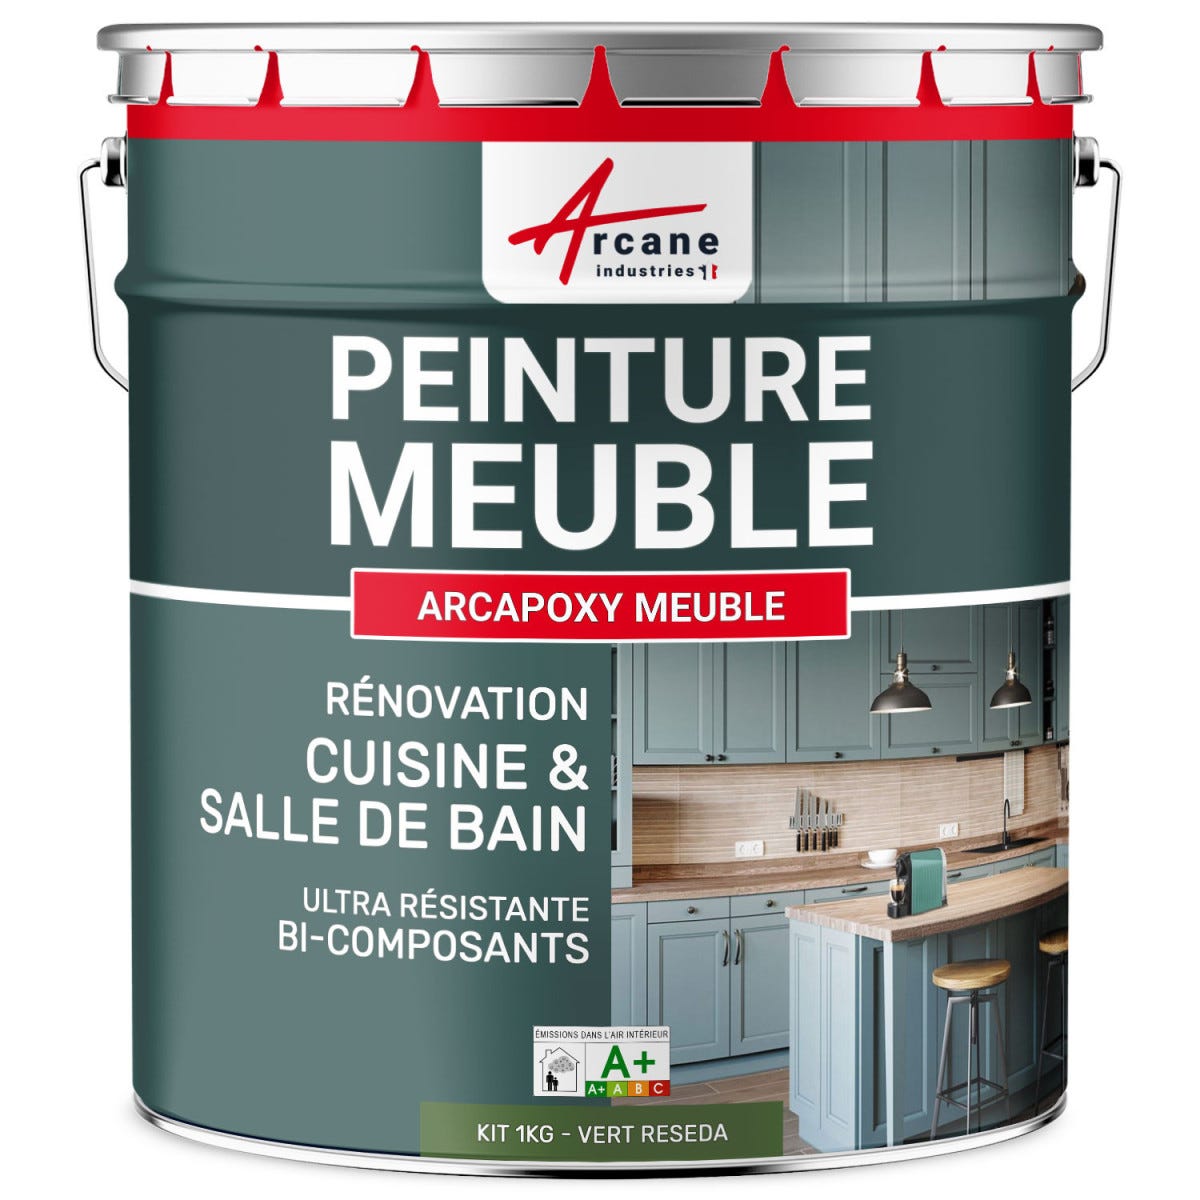 Peinture Meuble Cuisine, Salle de Bain - ARCAPOXY MEUBLE - 1 kg (jusqu'à 12 m² en 2 couches) - Vert Reseda - RAL 6011 - ARCANE INDUSTRIES 5